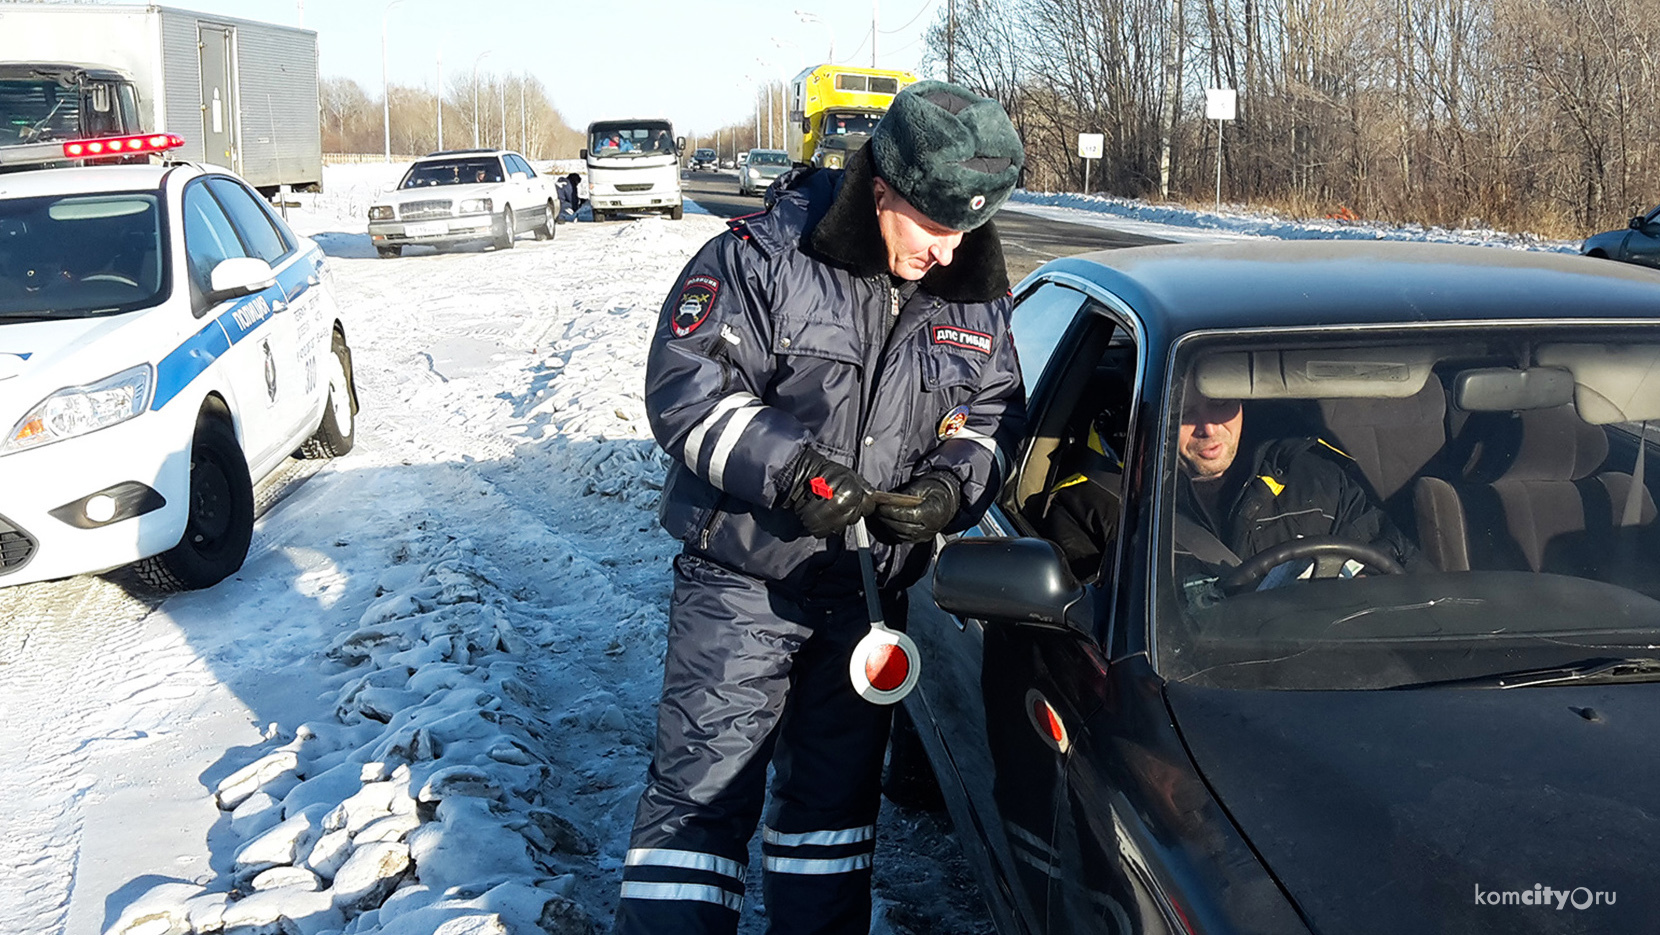 173 водителя проверили на состояние опьянения в ходе акции «Нетрезвый водитель» в Комсомольском районе